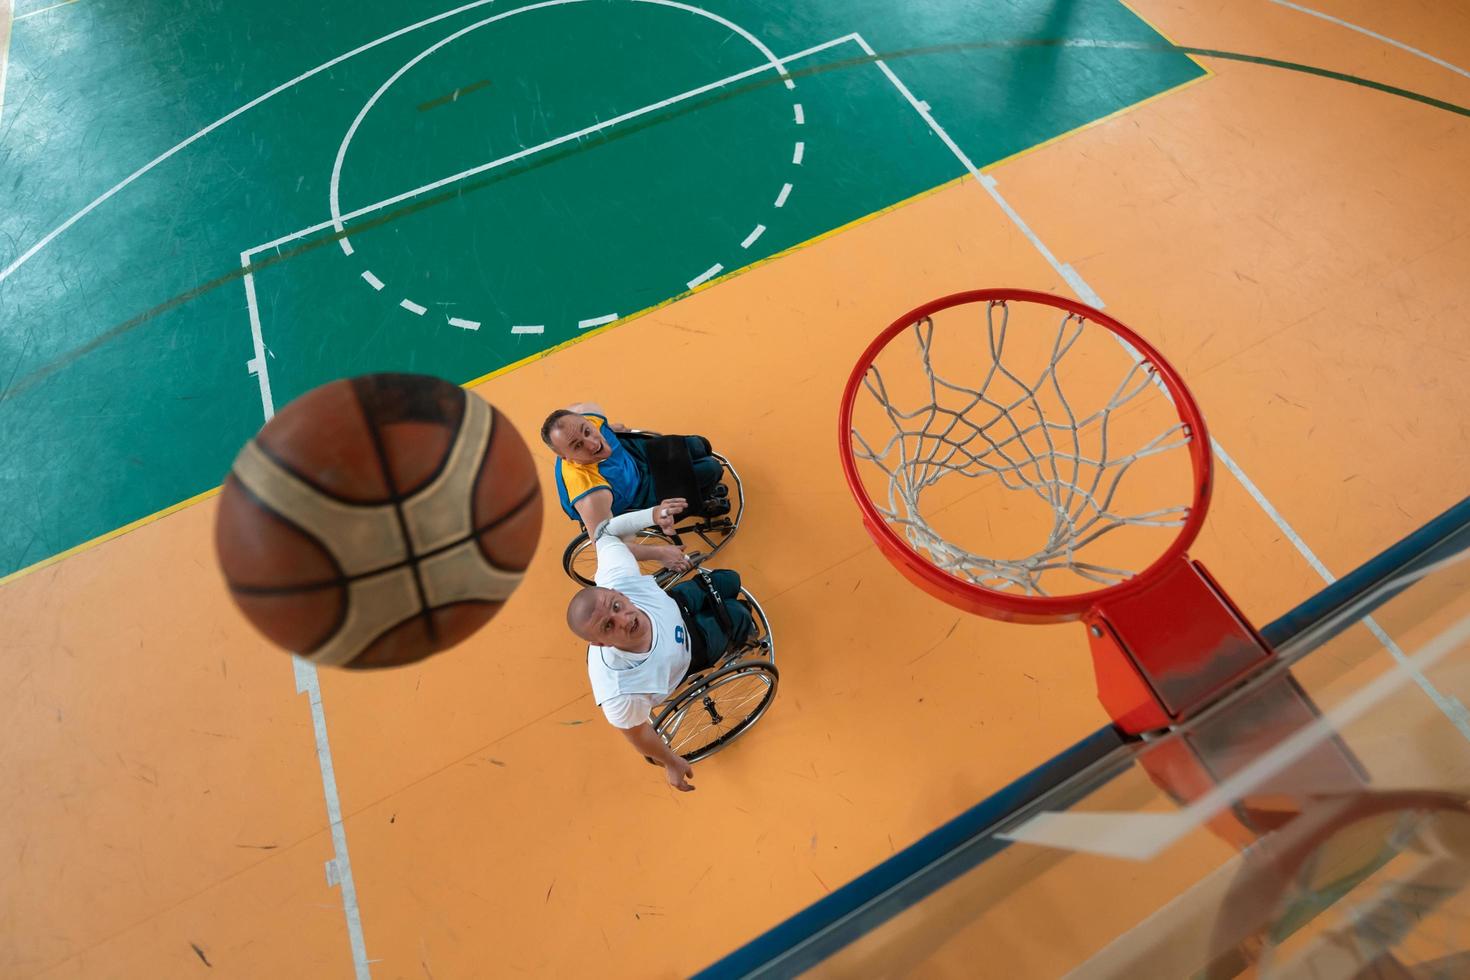 les anciens combattants handicapés de la guerre ou du travail des équipes de basket-ball mixtes et d'âge en fauteuil roulant jouant un match d'entraînement dans une salle de sport. concept de réadaptation et d'inclusion des personnes handicapées. photo